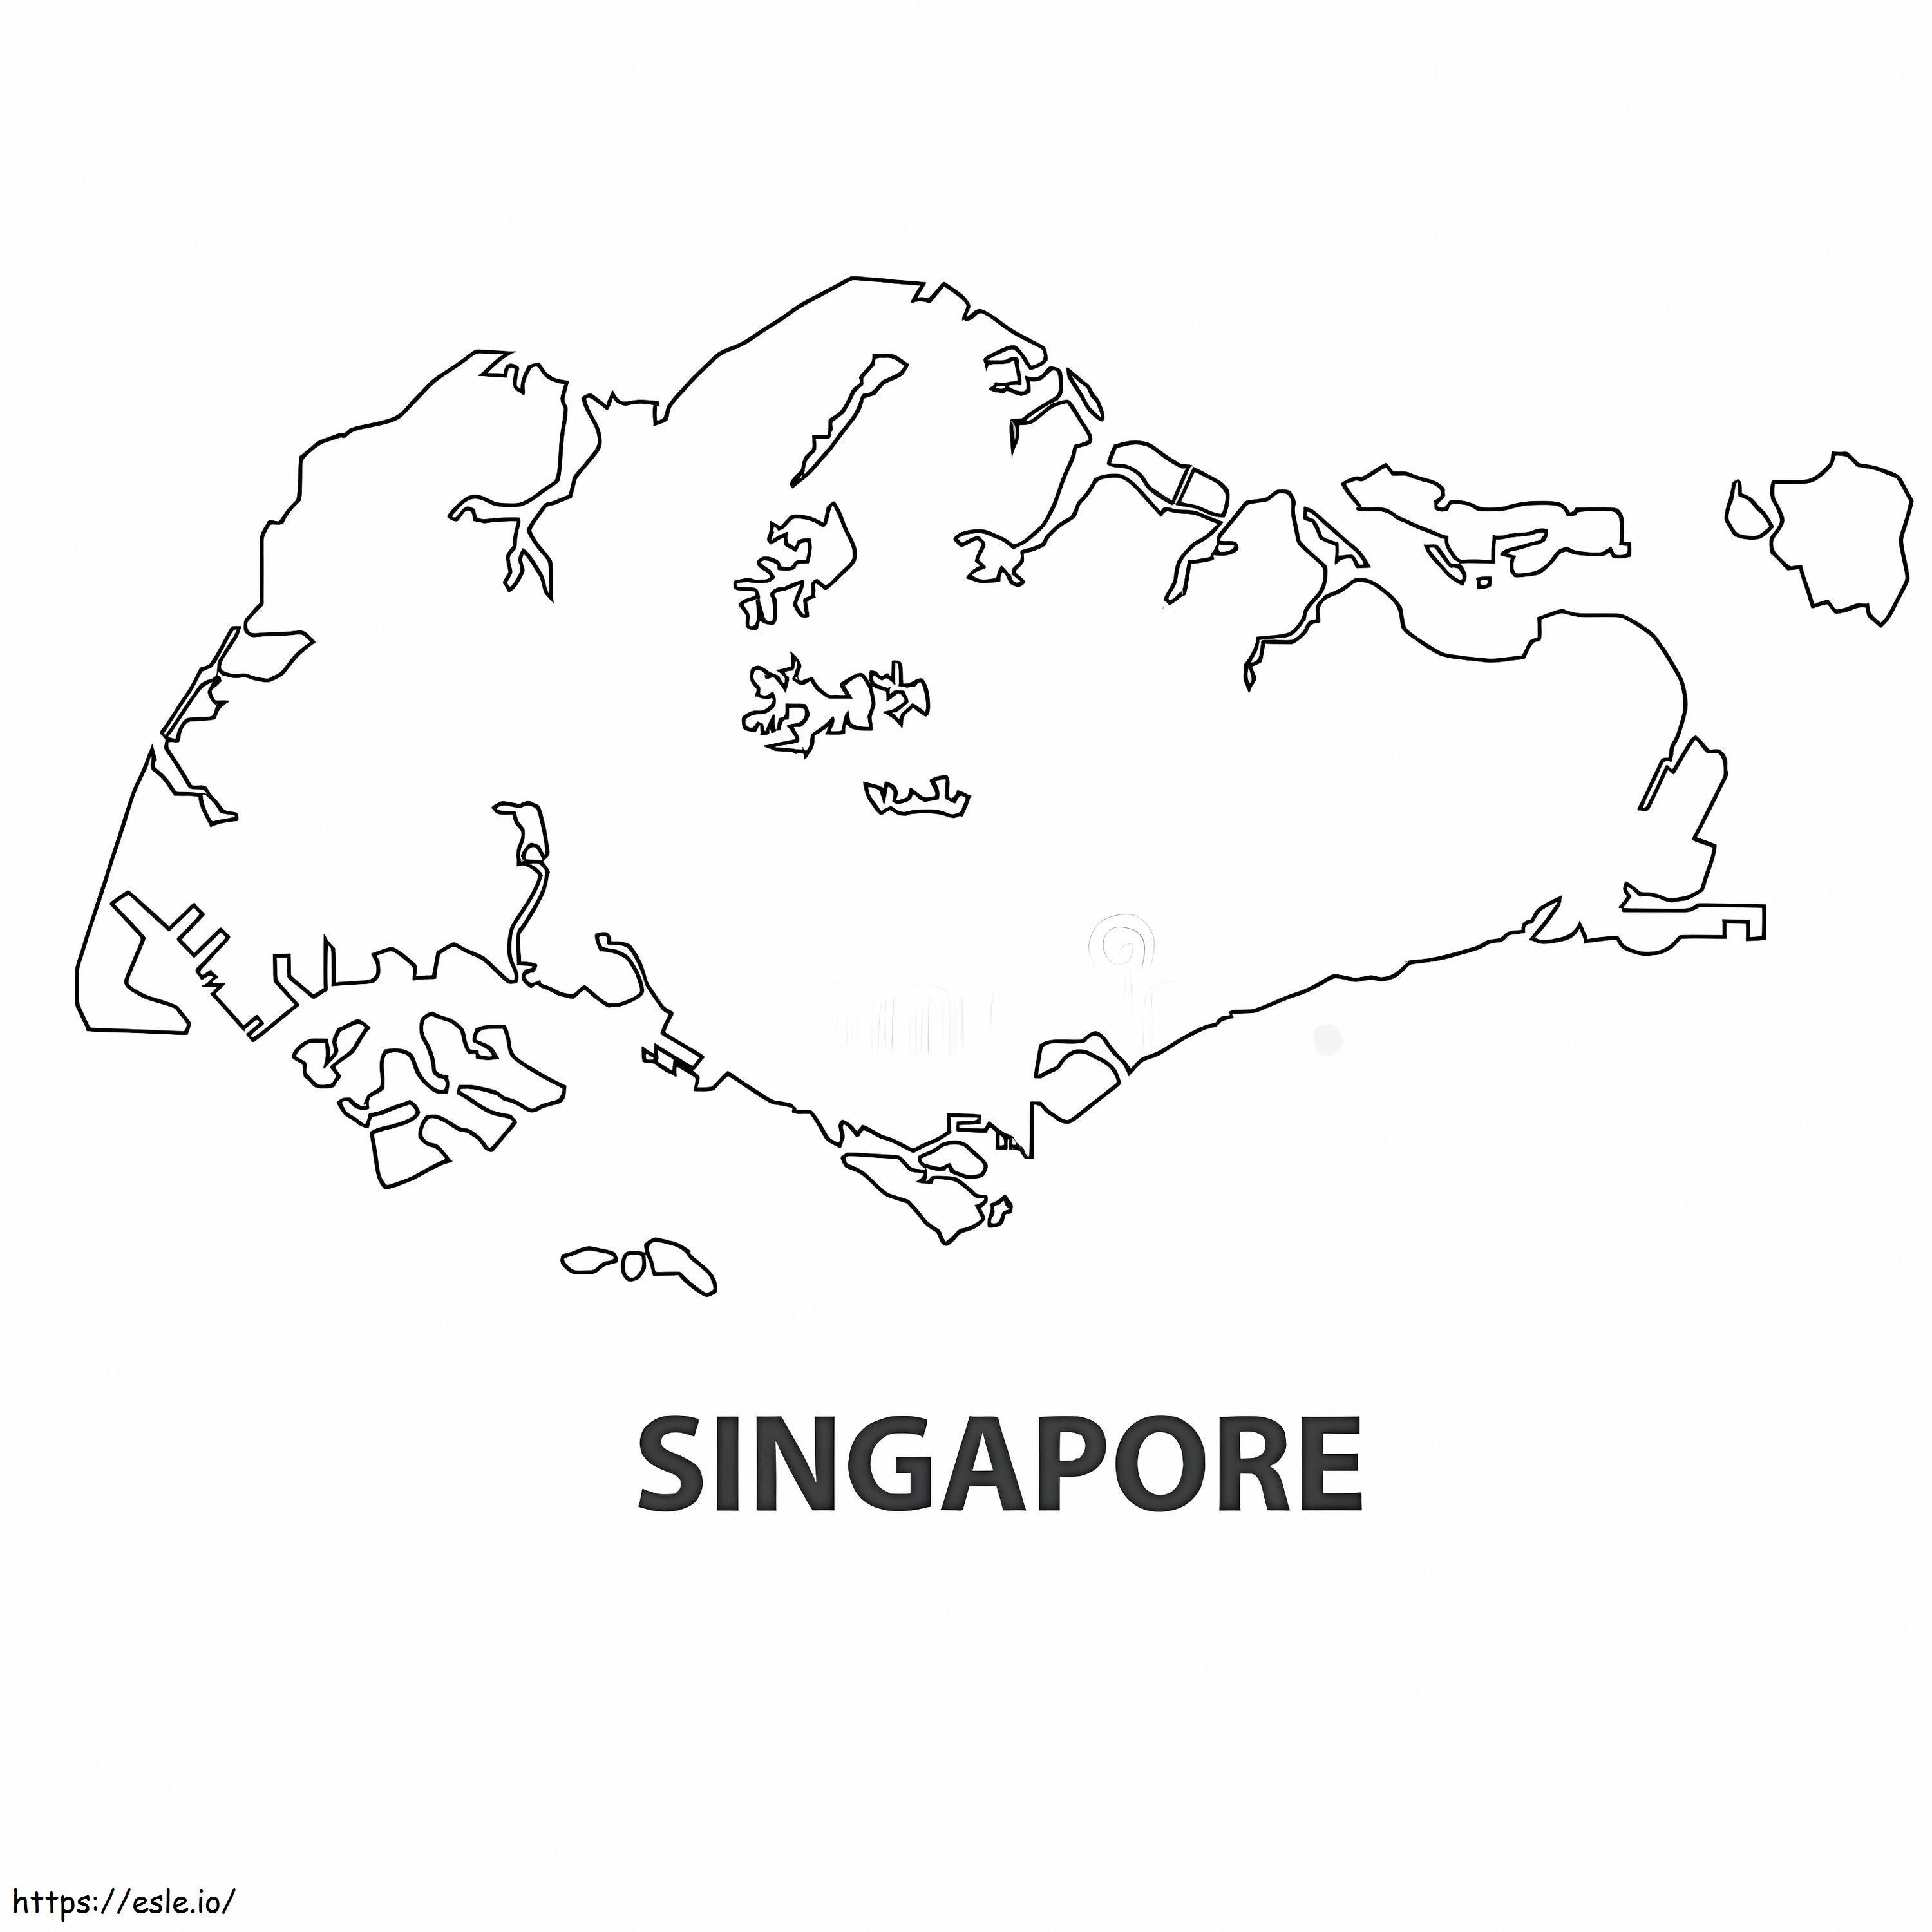 Singapore kaart kleurplaat kleurplaat